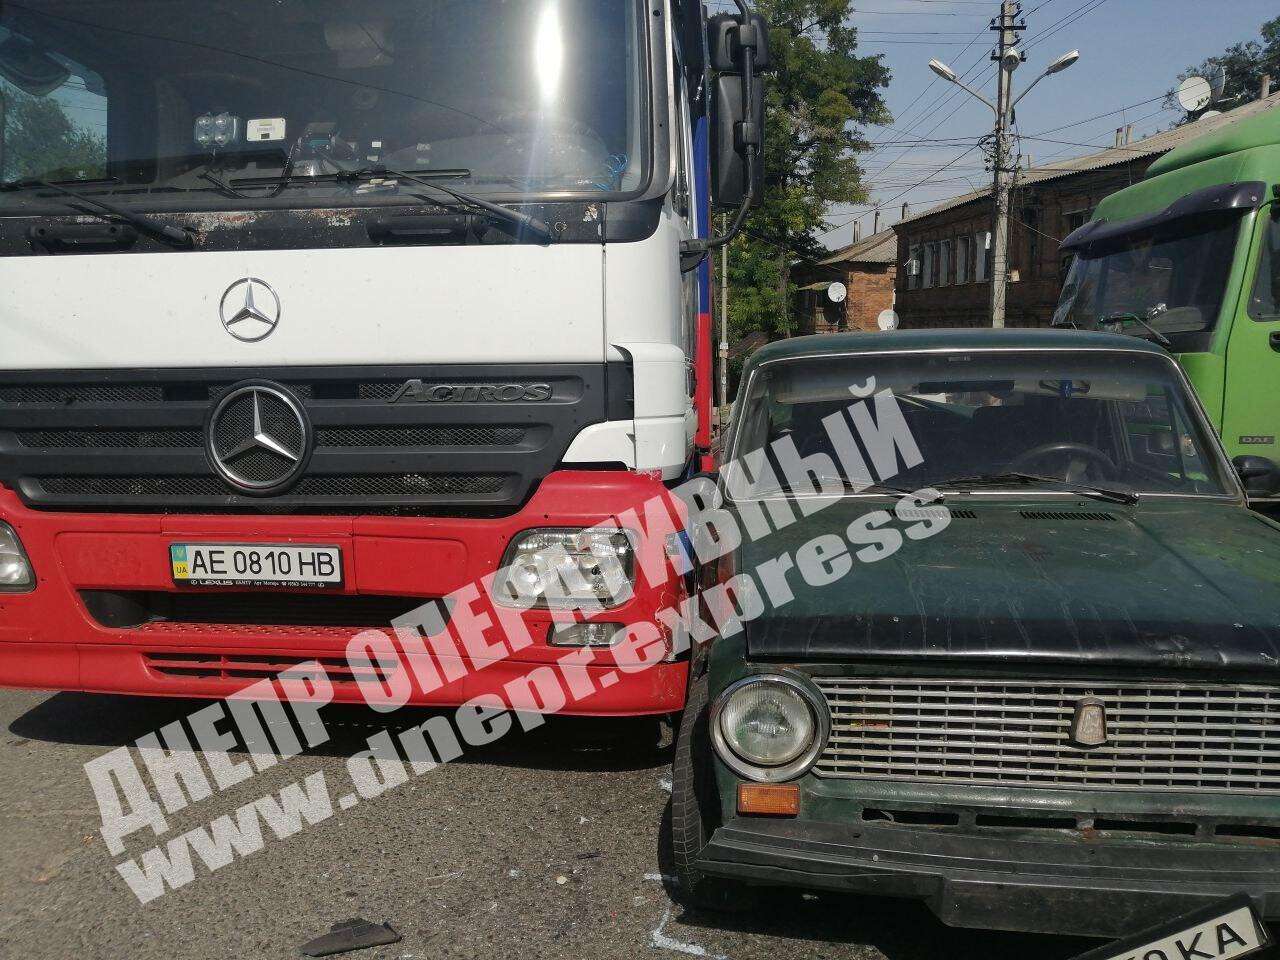 В Днепре на перекрестке улиц Орловская и Камчатская сегодня, 3 сентября, произошла авария с участием автомобиля ВАЗ и двух грузовиков: DAF и Mercedes-Benz. Новости Днепра